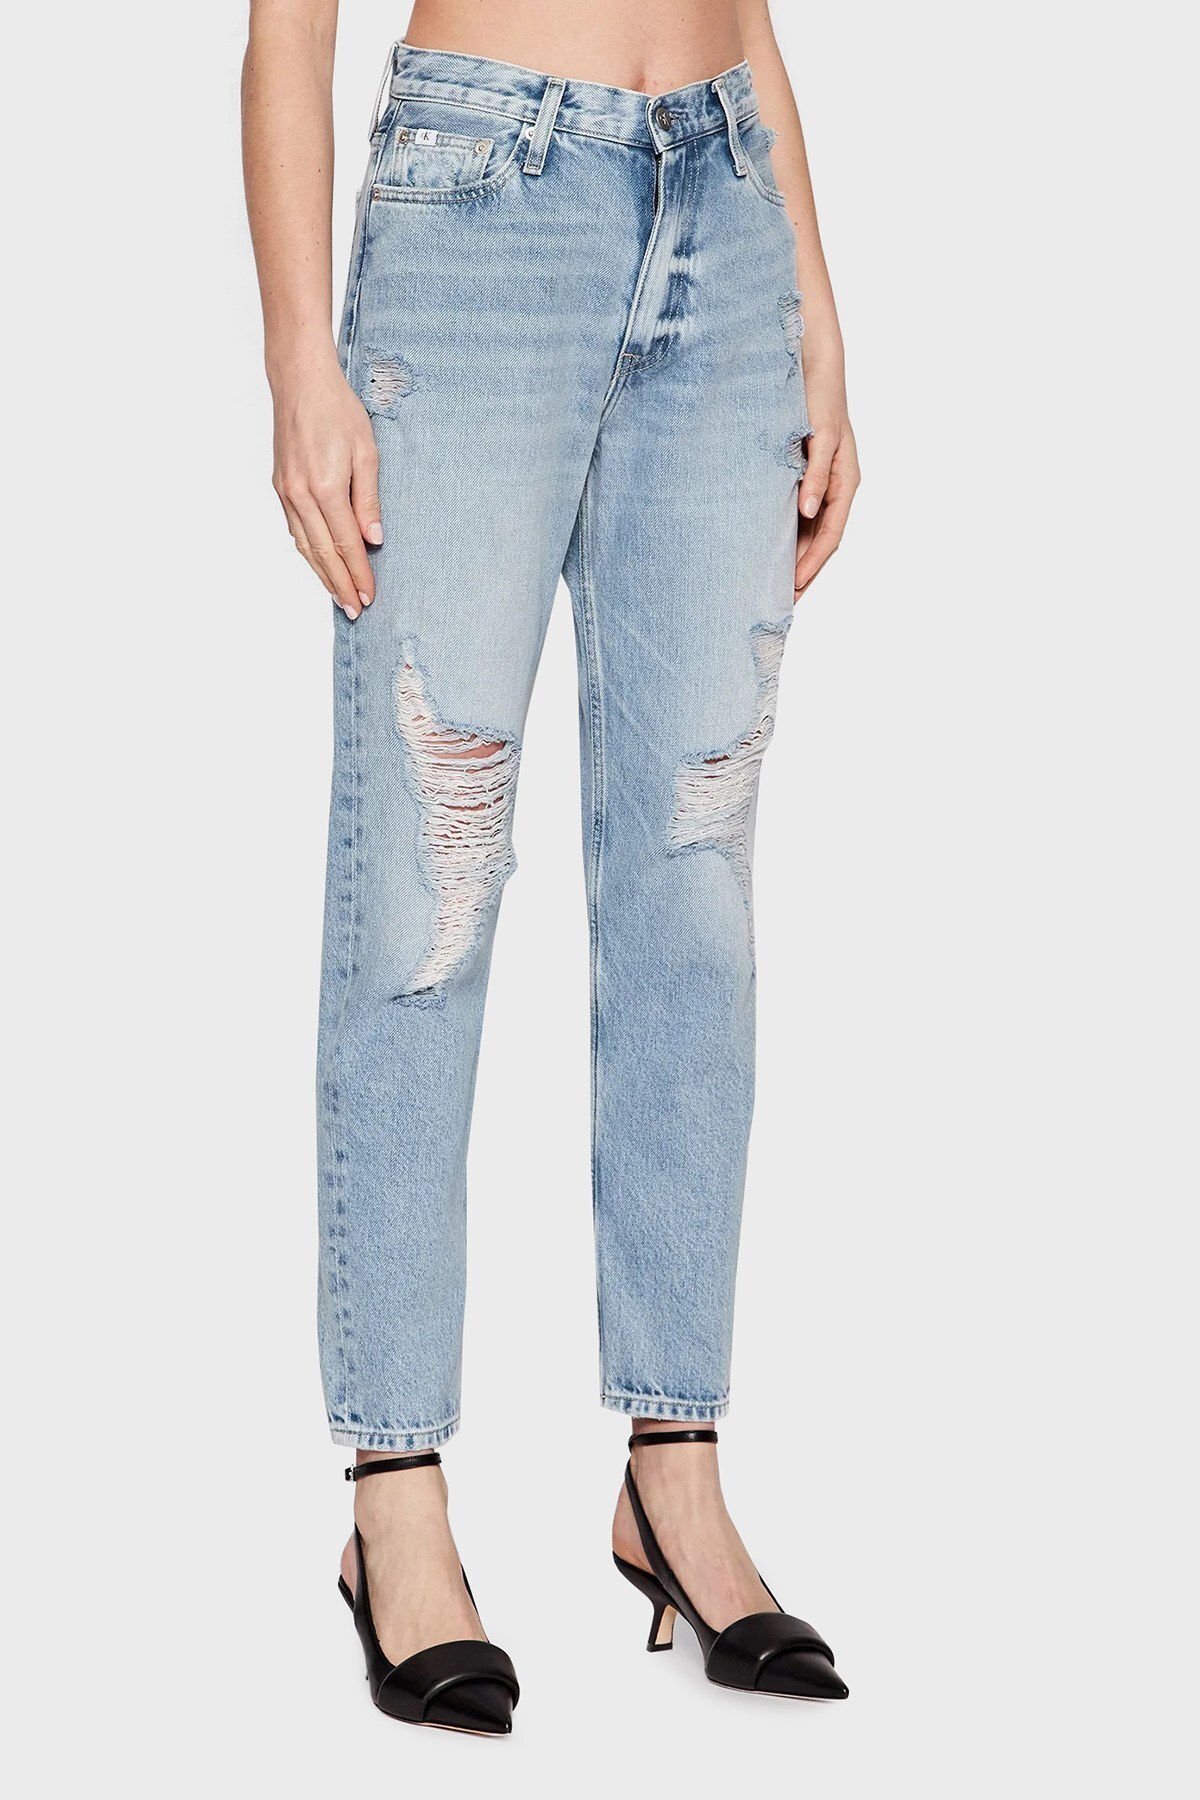 Calvin Klein Yüksek Bel Pamuklu Daralan Paça Mom Jeans Bayan Kot Pantolon J20J218512 1A4 LACİVERT